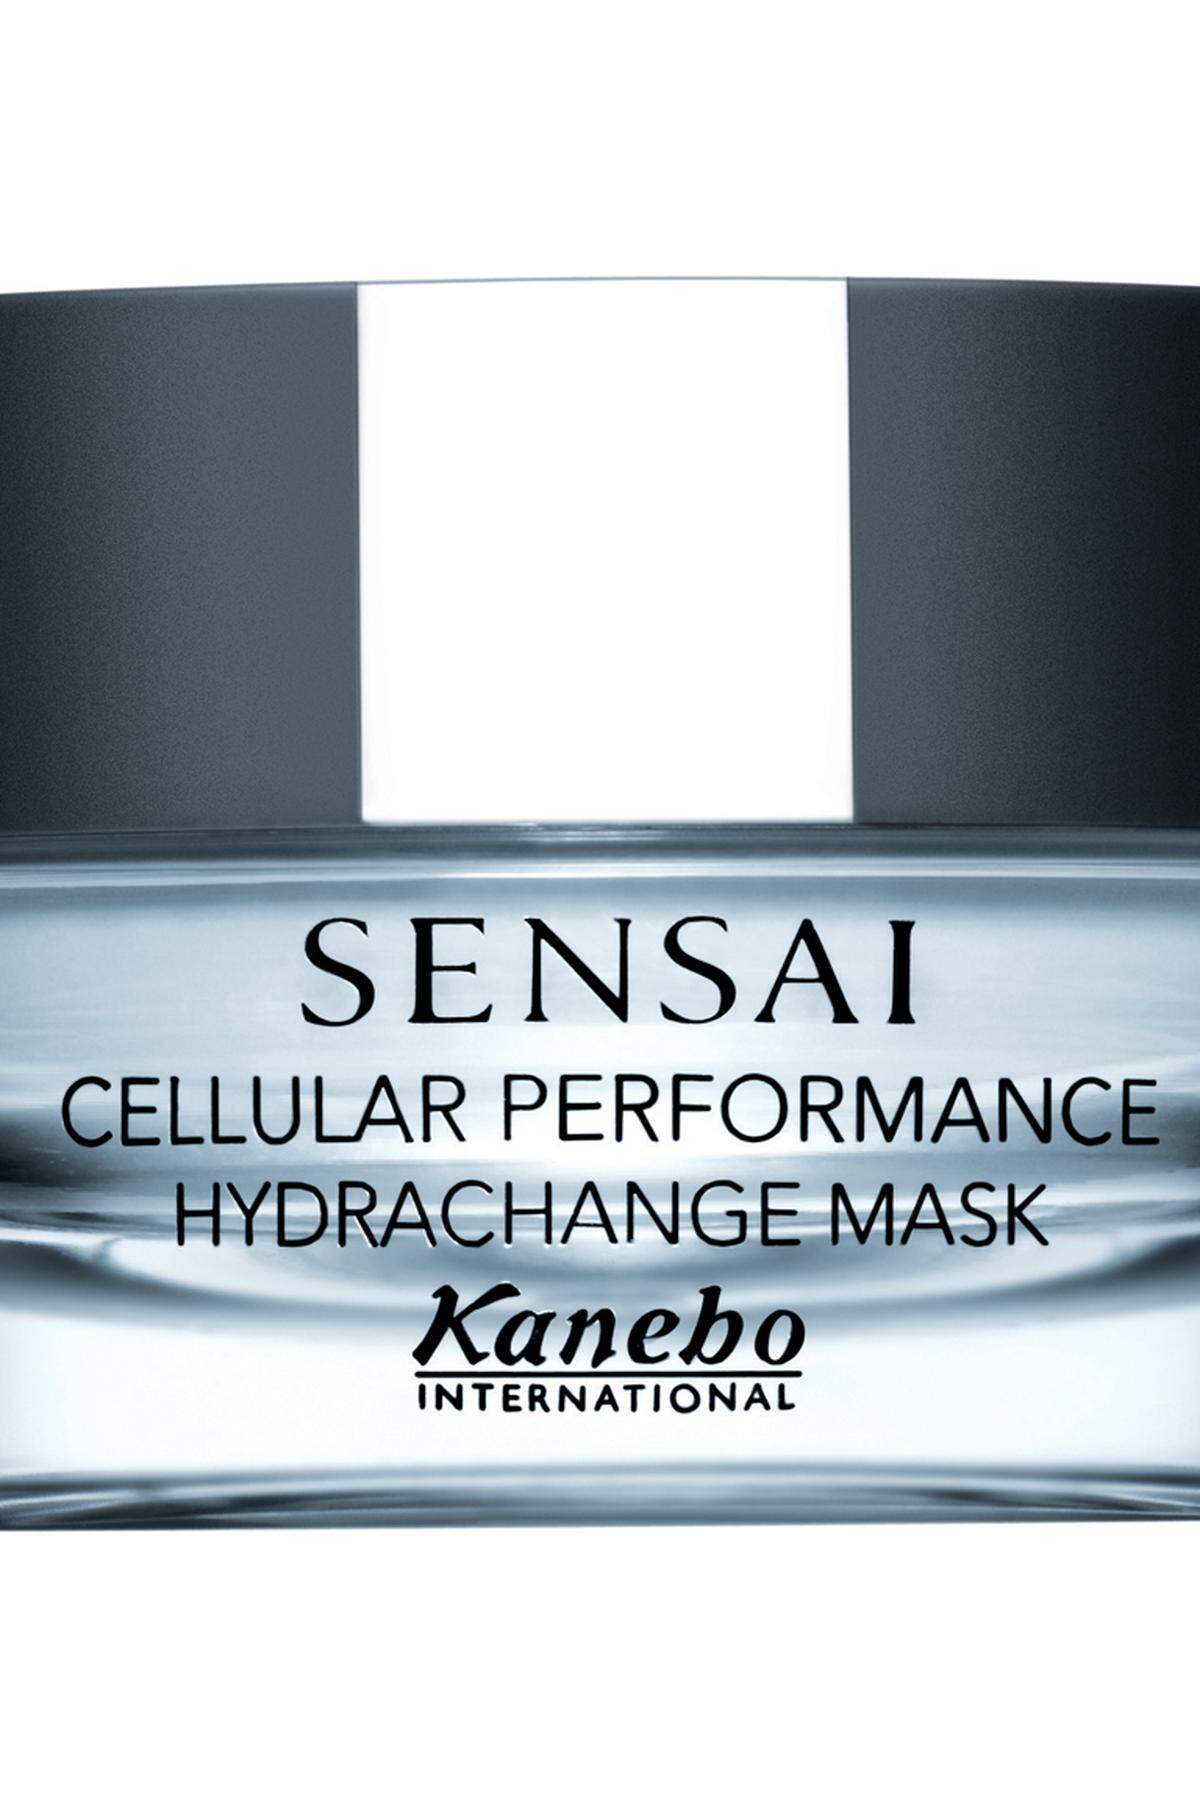 Angenehme Vorbereitung für durchtanzte Nächte und Haut bzw. beruhigendes Helferlein am Tag danach ist die Hydrachange Mask von Sensai.